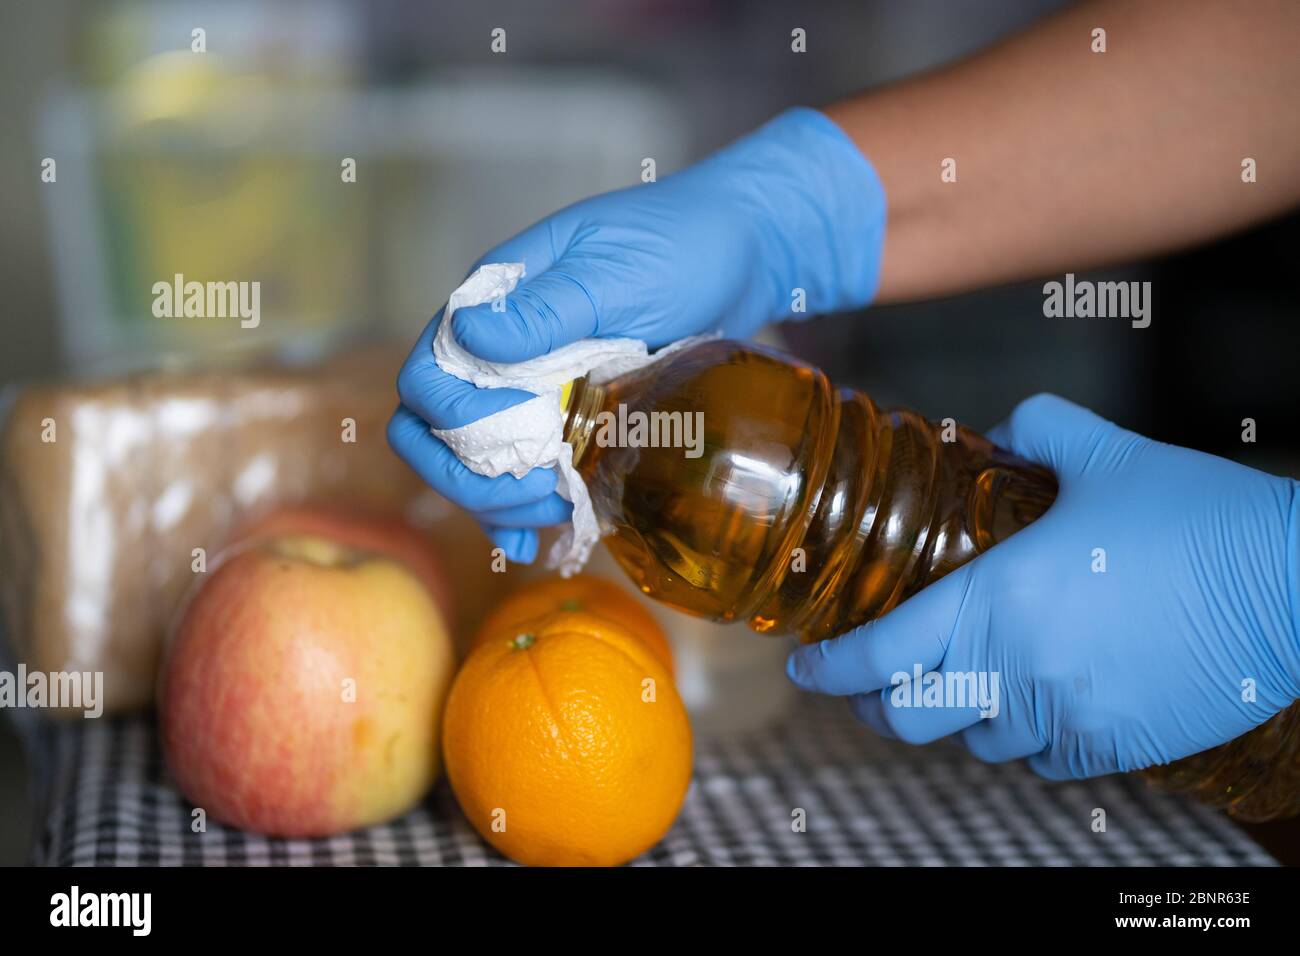 Une femme portant des gants nettoie une bouteille de jus de fruits pendant la pandémie COVID-19 2020 Banque D'Images